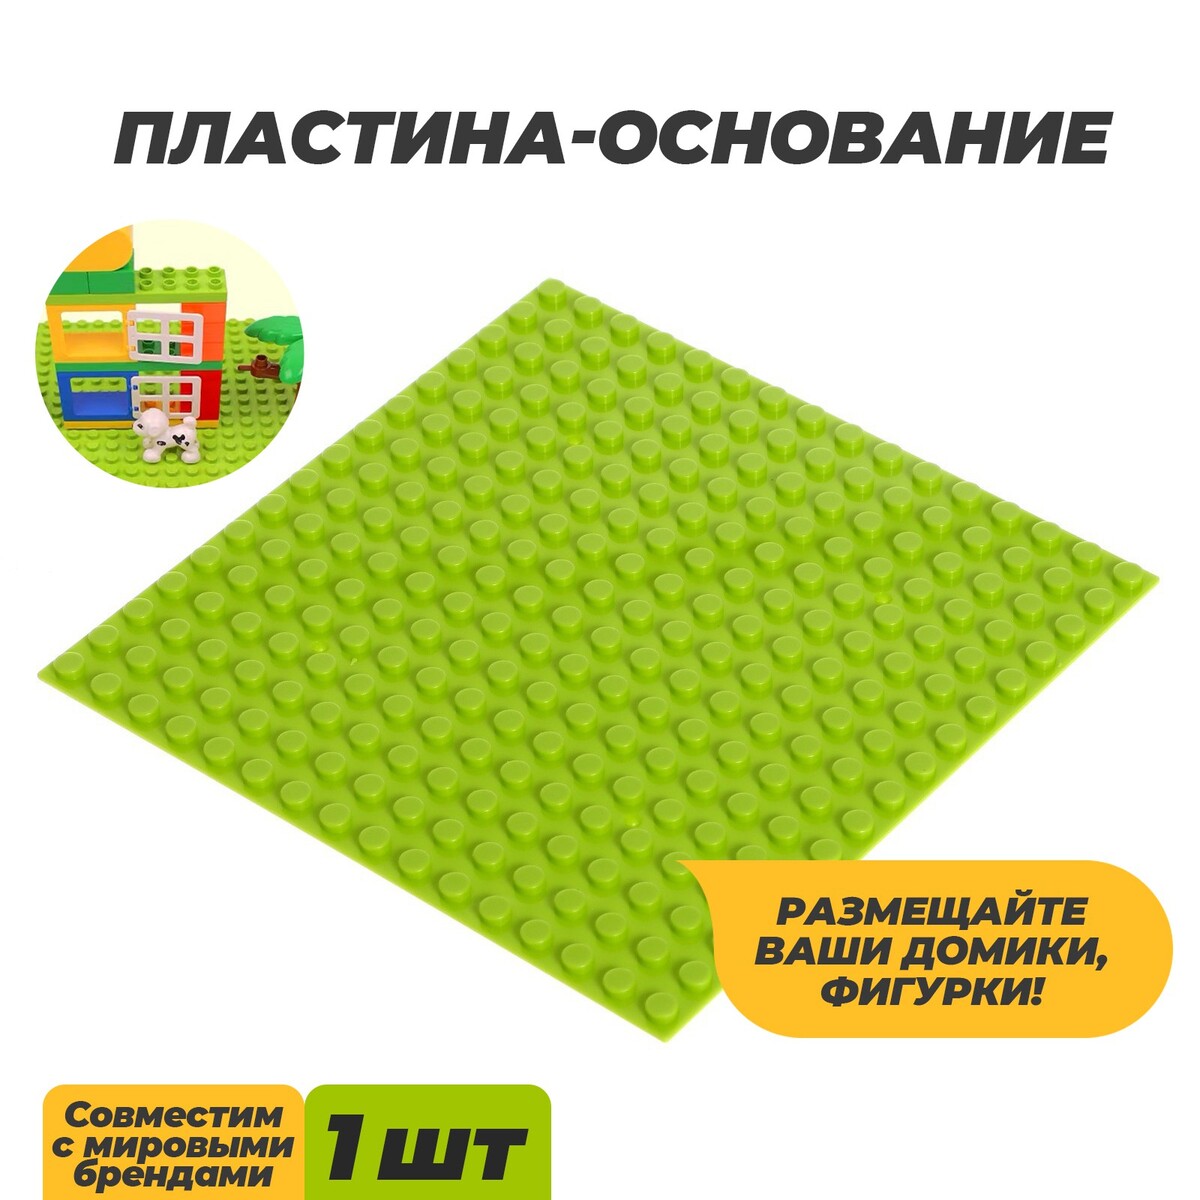 Пластина-основание для конструктора, 12,8 × 12,8 см, цвет салатовый пластина основание для конструктора 25 5 × 12 5 см серый